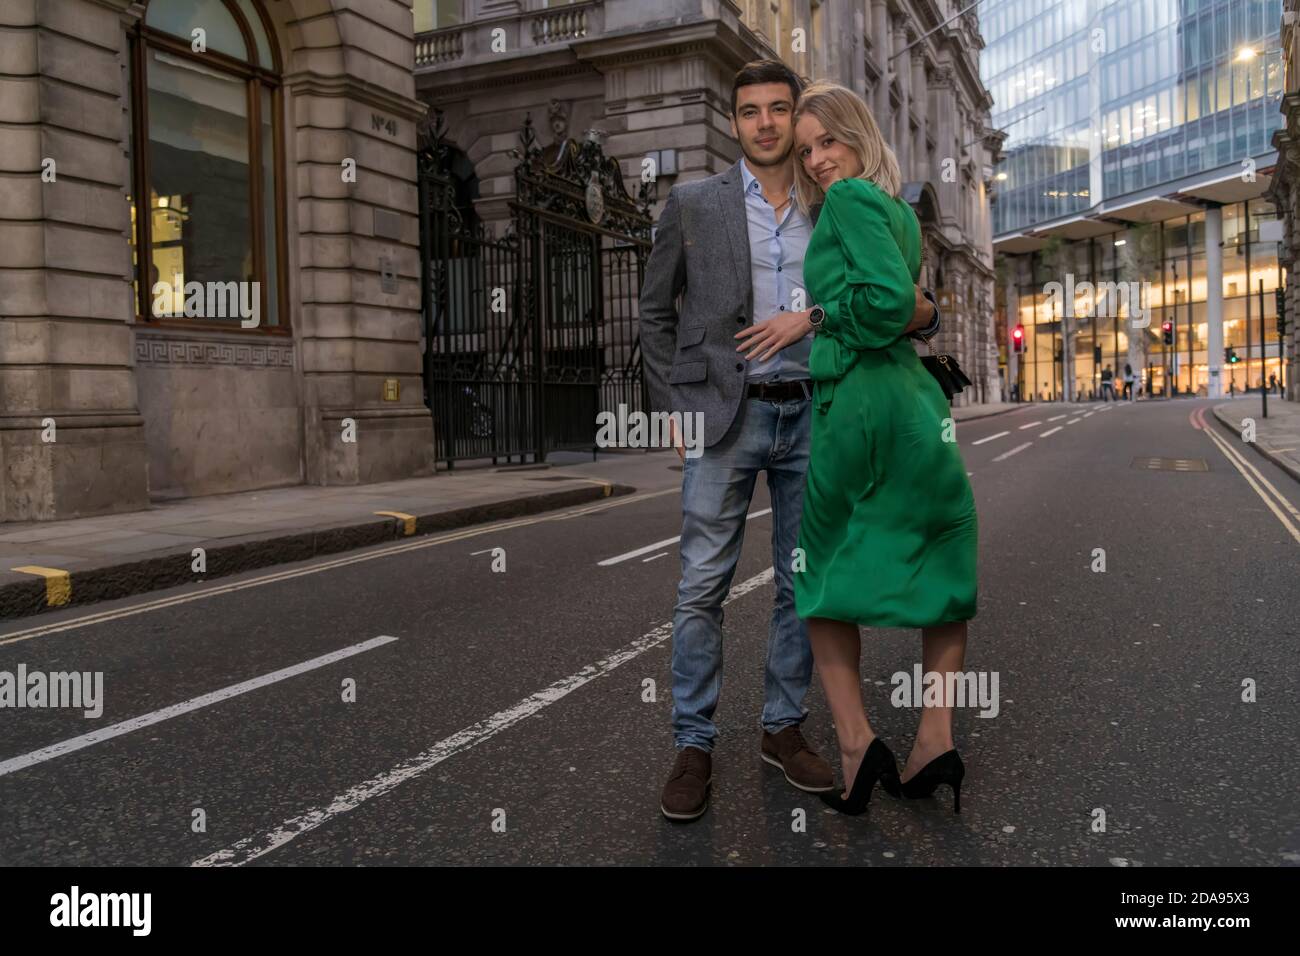 Junges flirty Paar posiert auf einer Straße von City in London, Großbritannien Stockfoto